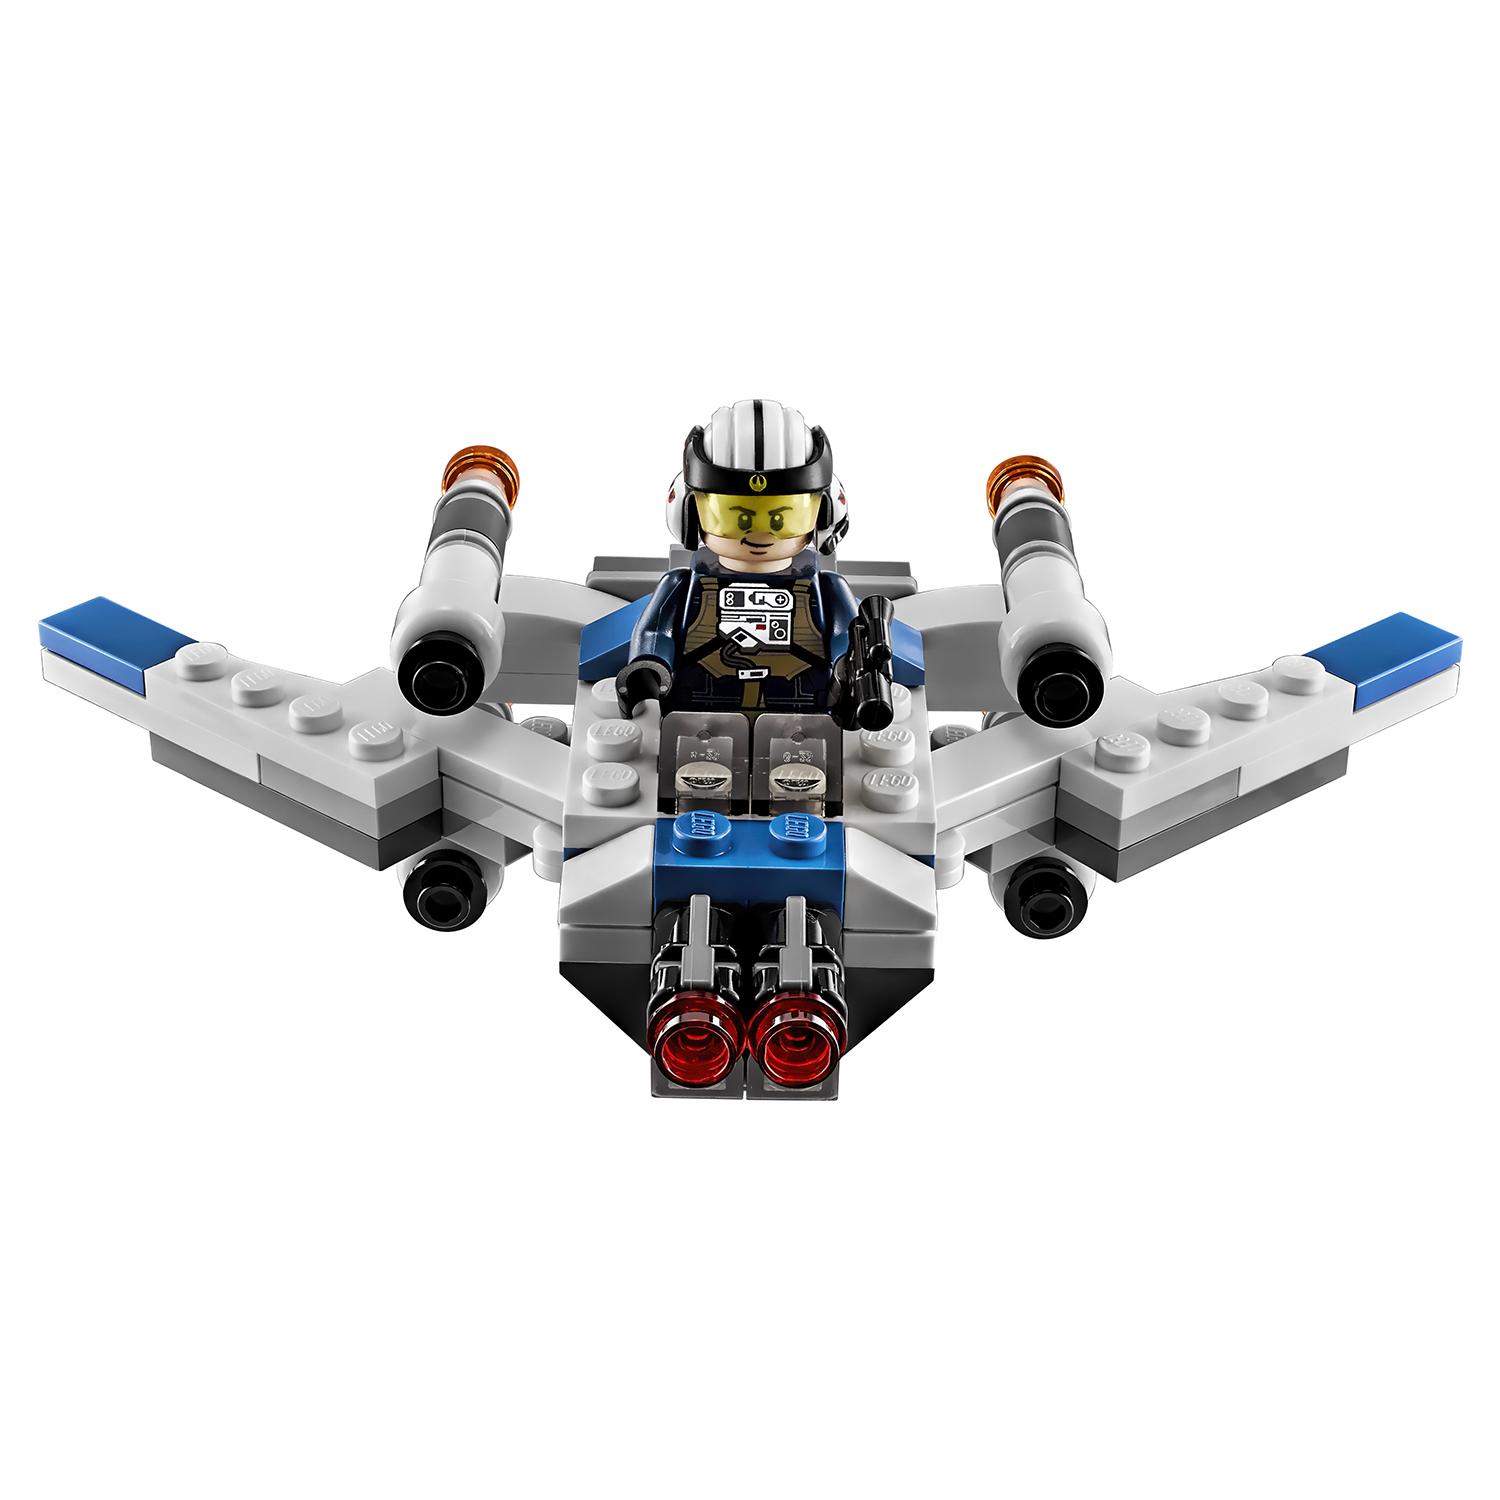 Lego Star Wars 75160 Звездные войны Микроистребитель типа U™